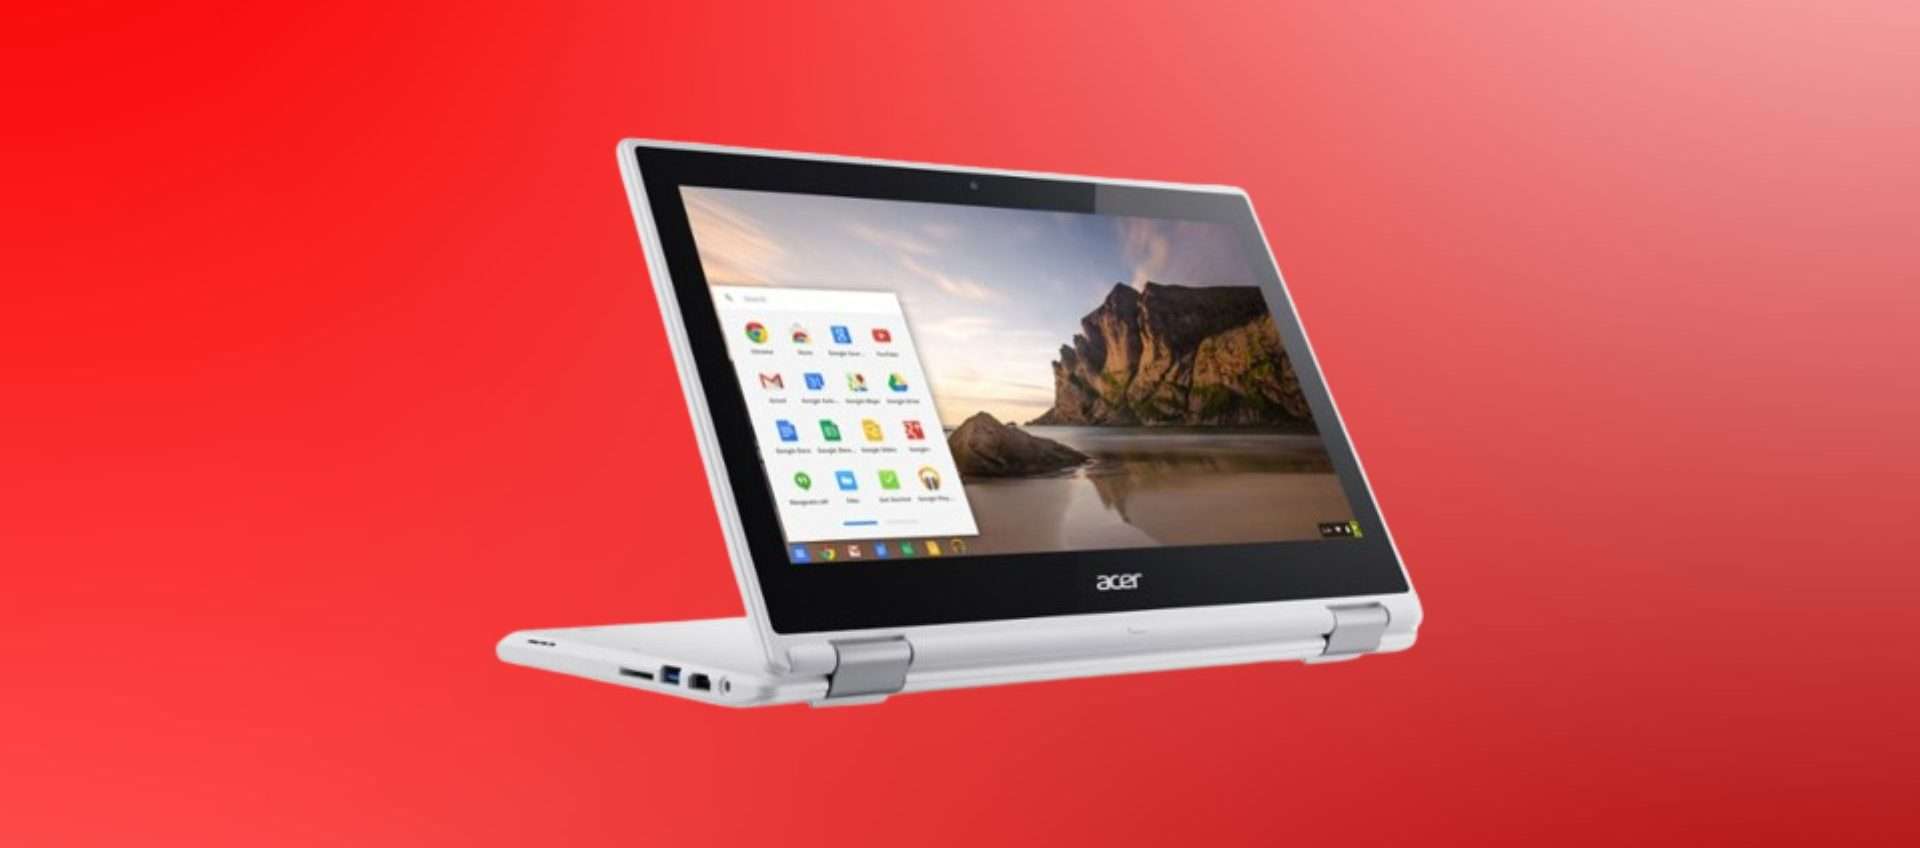 Praticamente regalato: Chromebook Acer ricondizionato in offerta a soli 80,10€